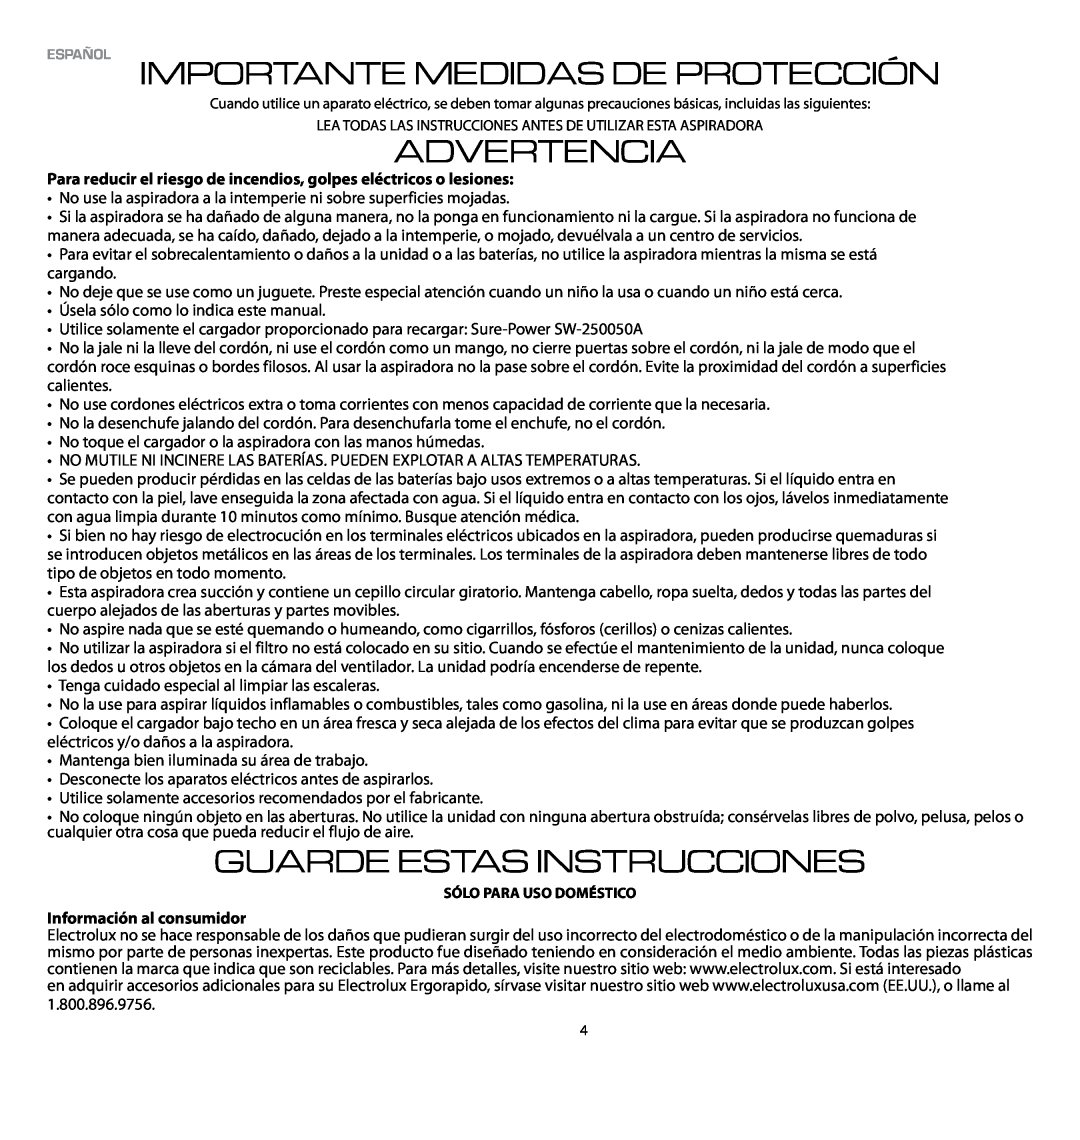 Electrolux EL1030A manual Español Importante Medidas De Protección, Advertencia, Guarde Estas Instrucciones 